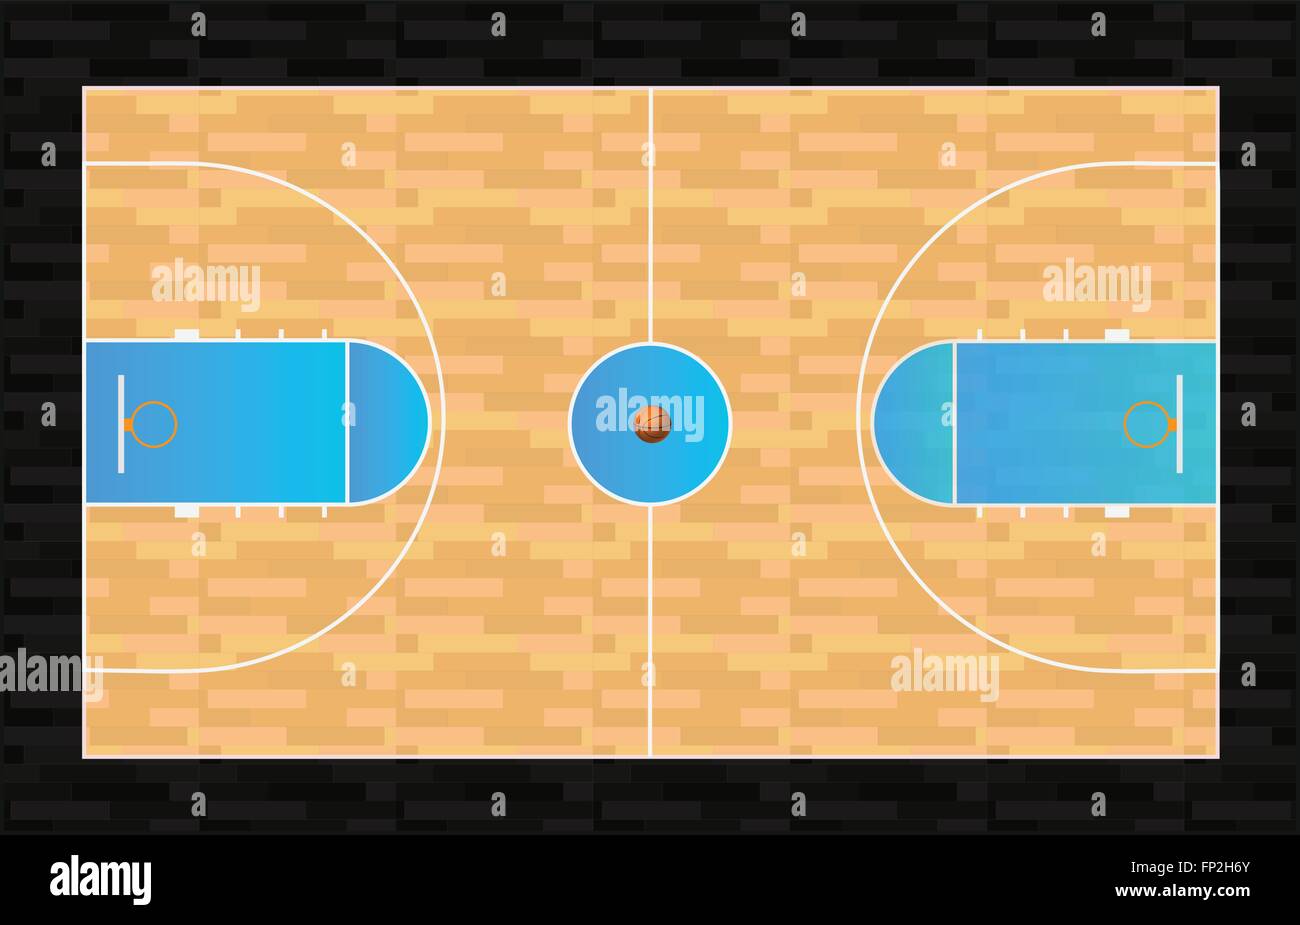 Illustrazione di un campo da pallacanestro con basket. Illustrazione Vettoriale